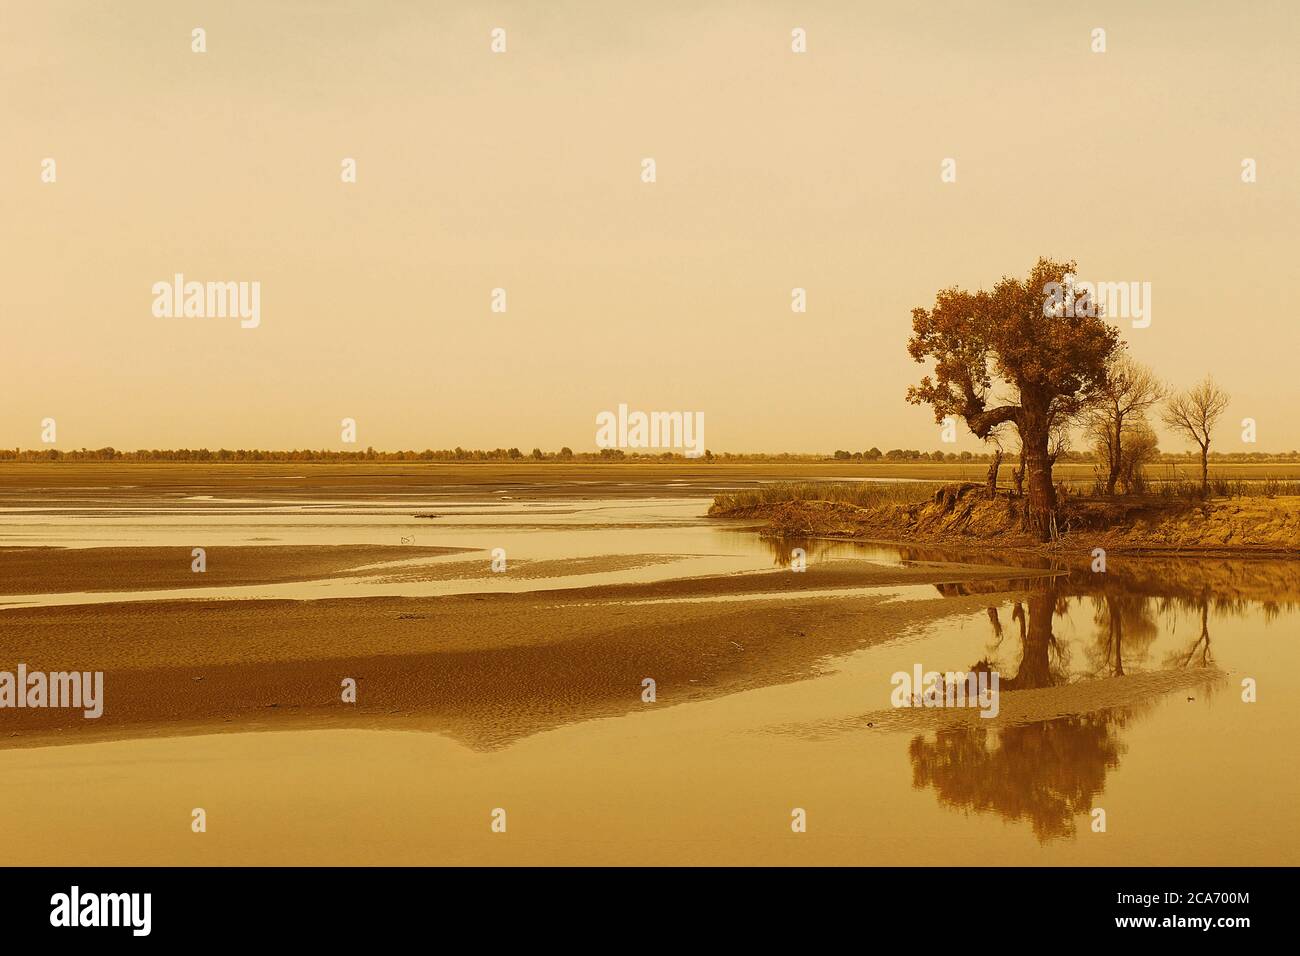 árbol reflejado en el agua, desierto de hotan - china Foto de stock